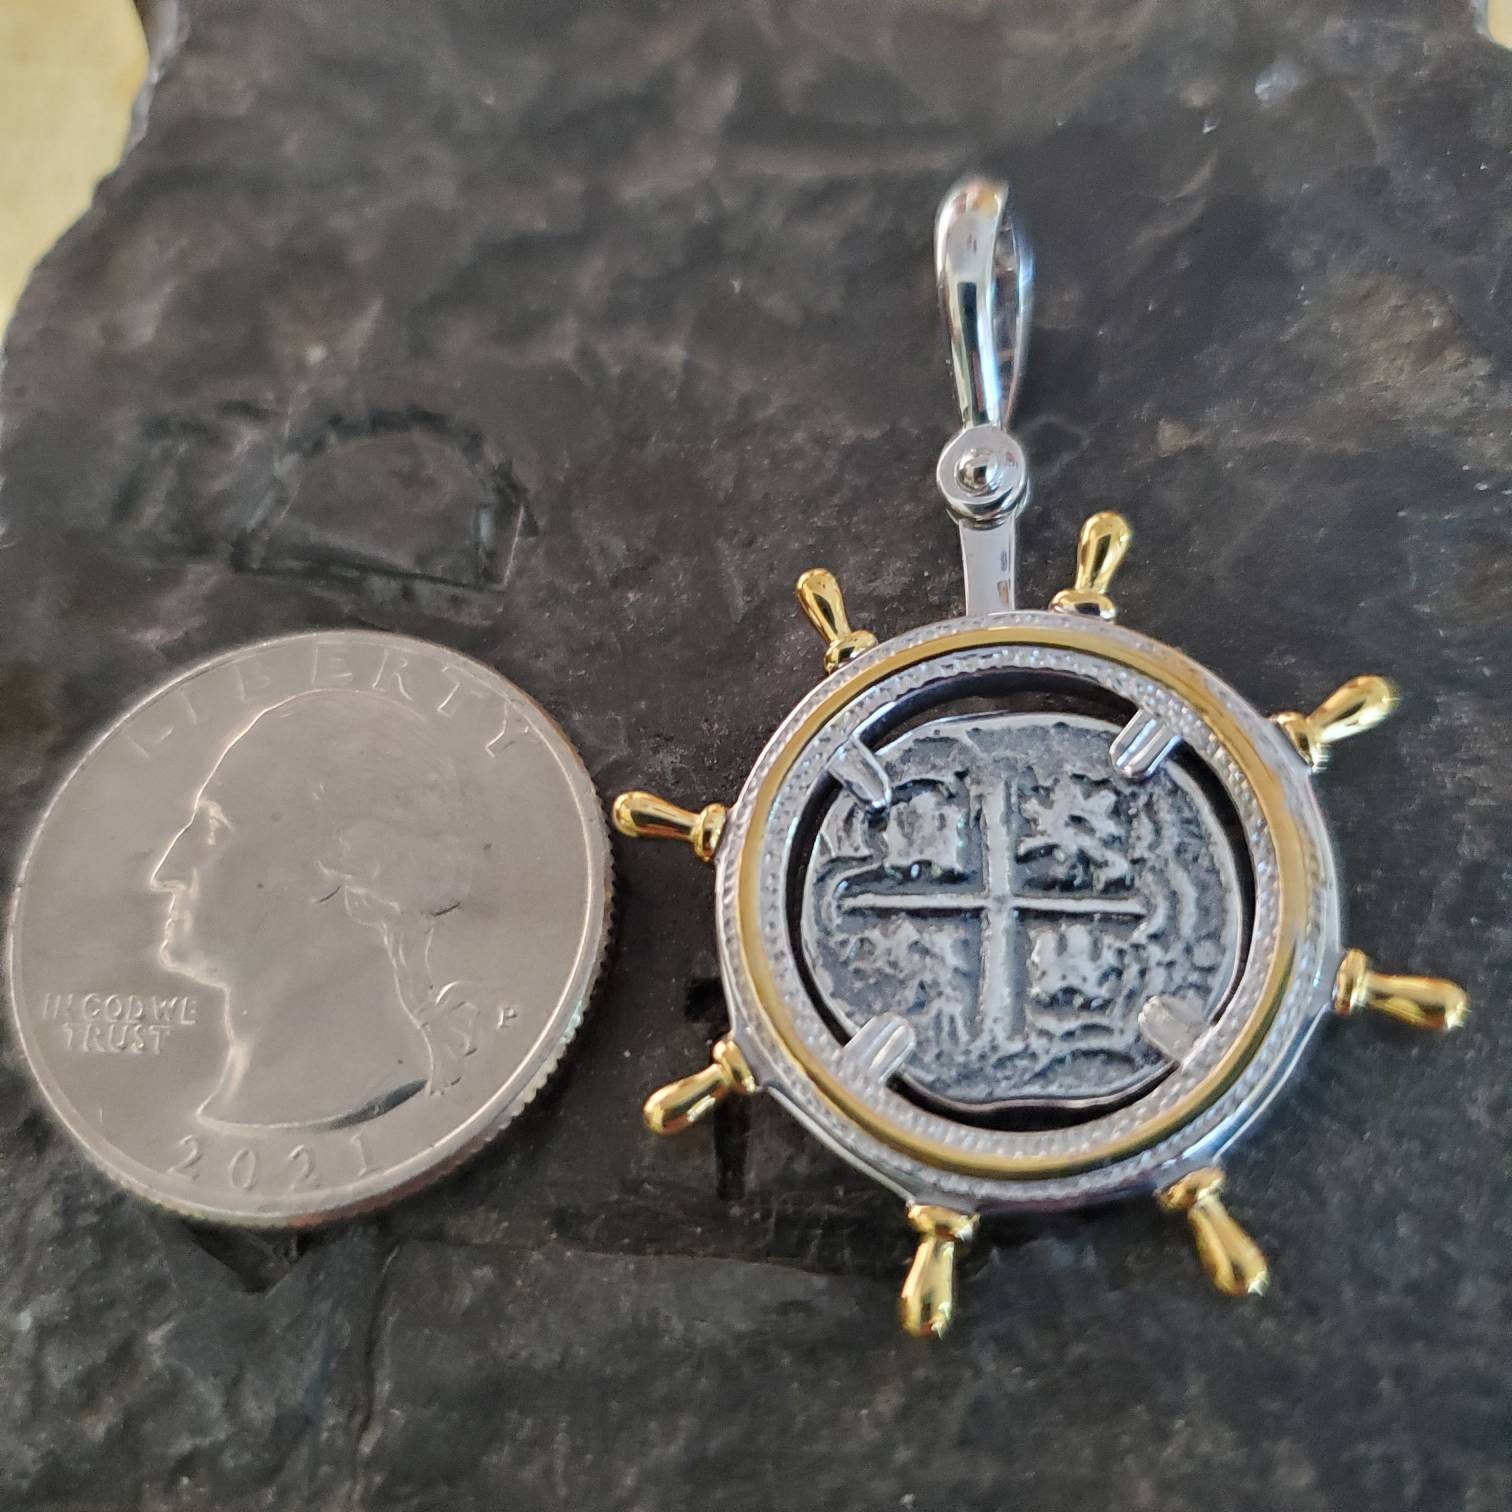 Atocha Jewelry - Pieces of 8 Silver Coin Pendant - Virtual Treasure Chest